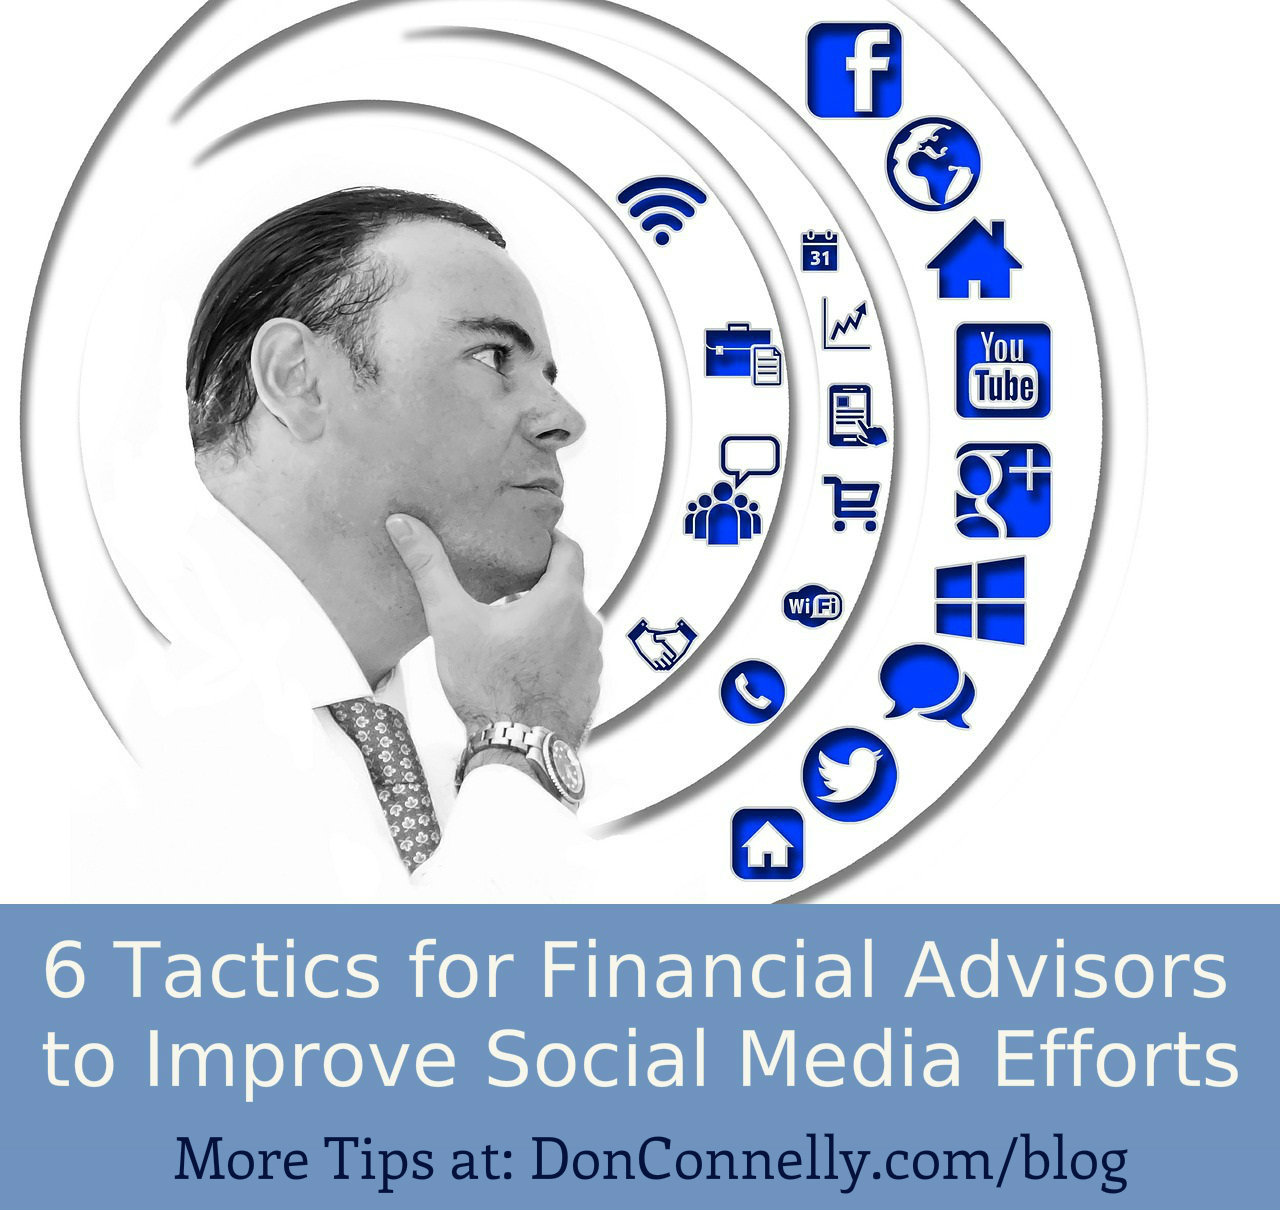 6 Tactics for Financial Advisors to Improve Social Media Efforts